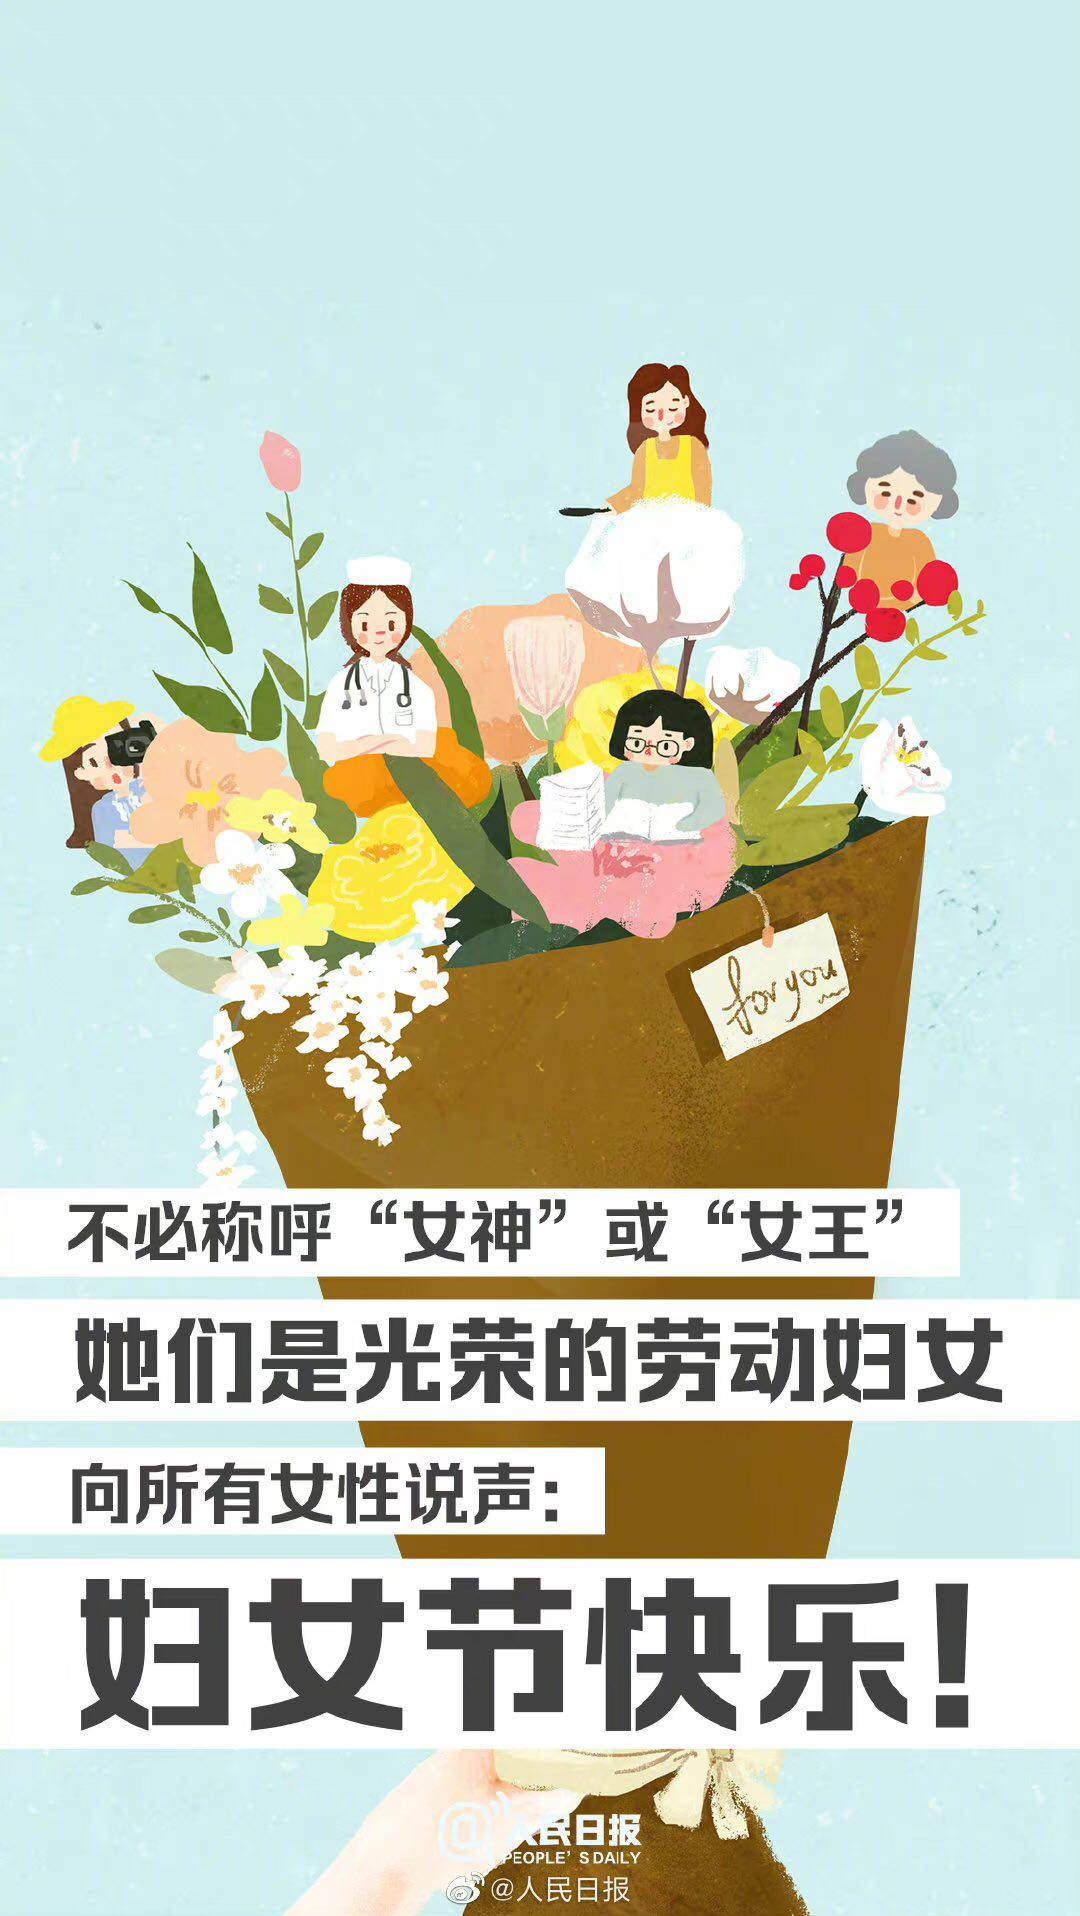 renmin - Rifiutare il giorno delle ragazze e il giorno della dea è il minimo rispetto per le donne